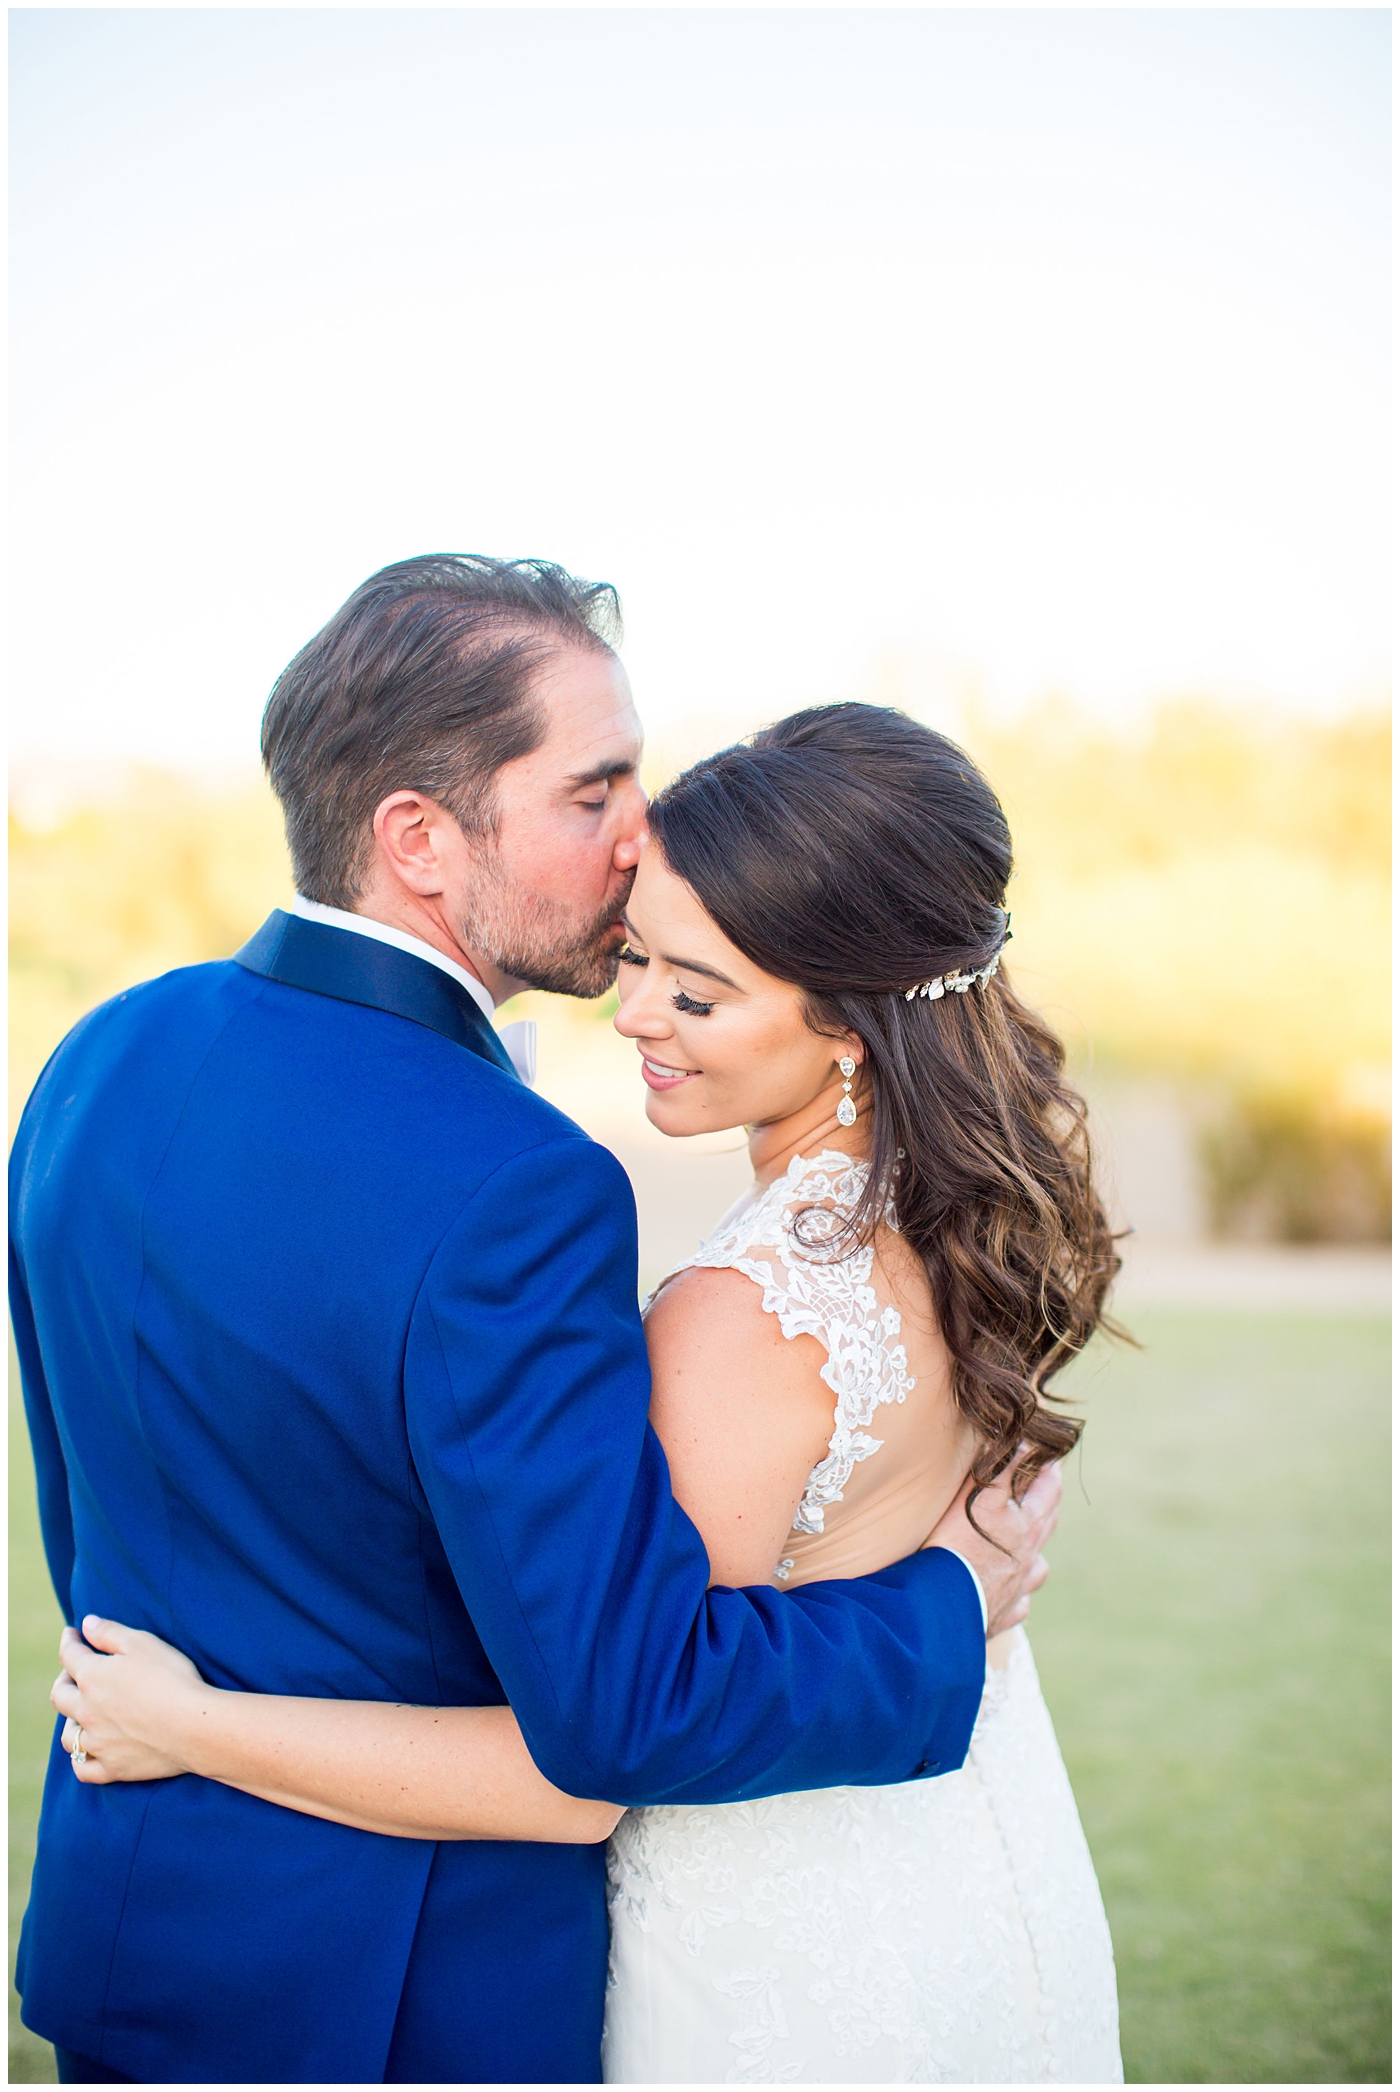 Bride in Justina Alexander dress with groom in custom blue suit kissing her cheek